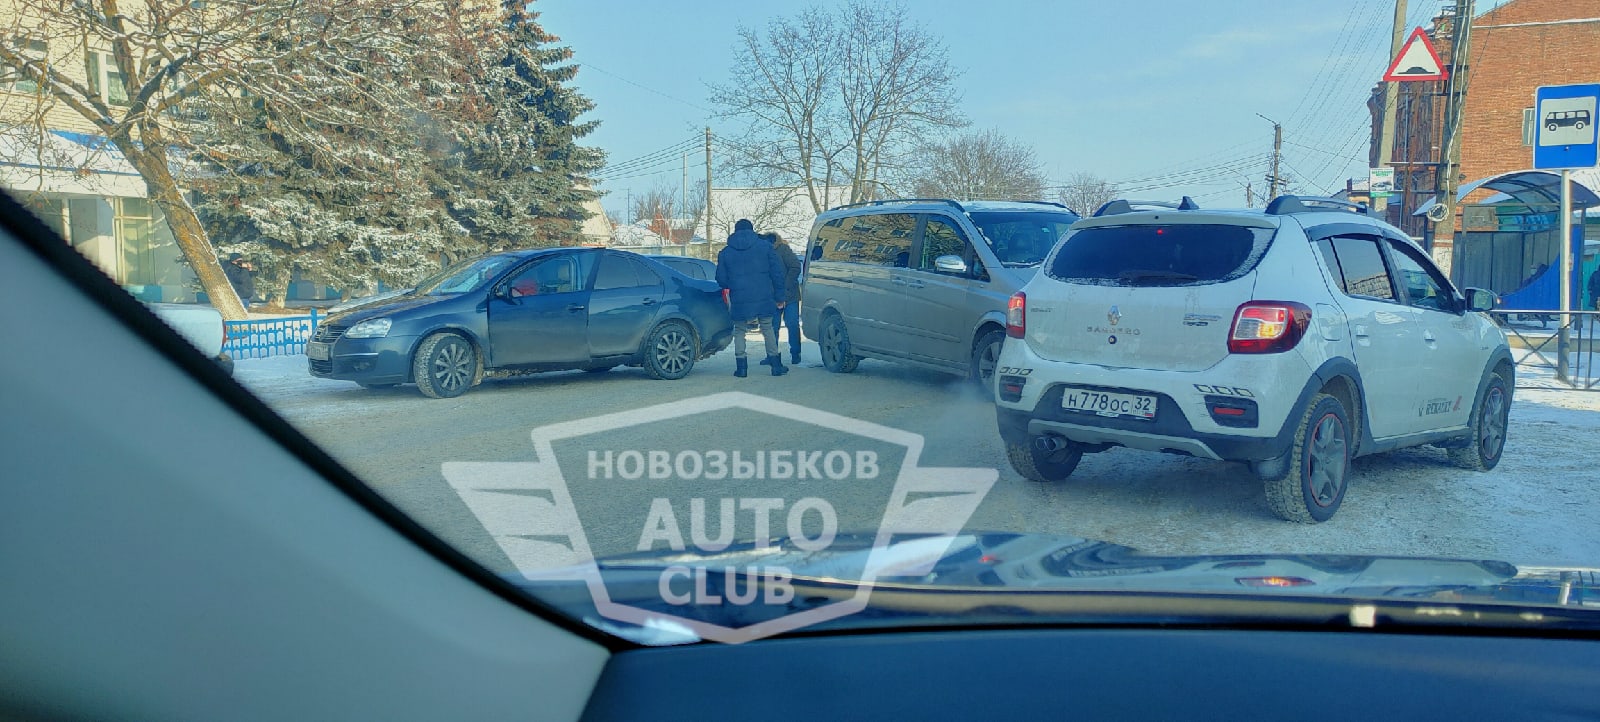 Очевидцы сняли «битву» внедорожников у рынка в Новозыбкове